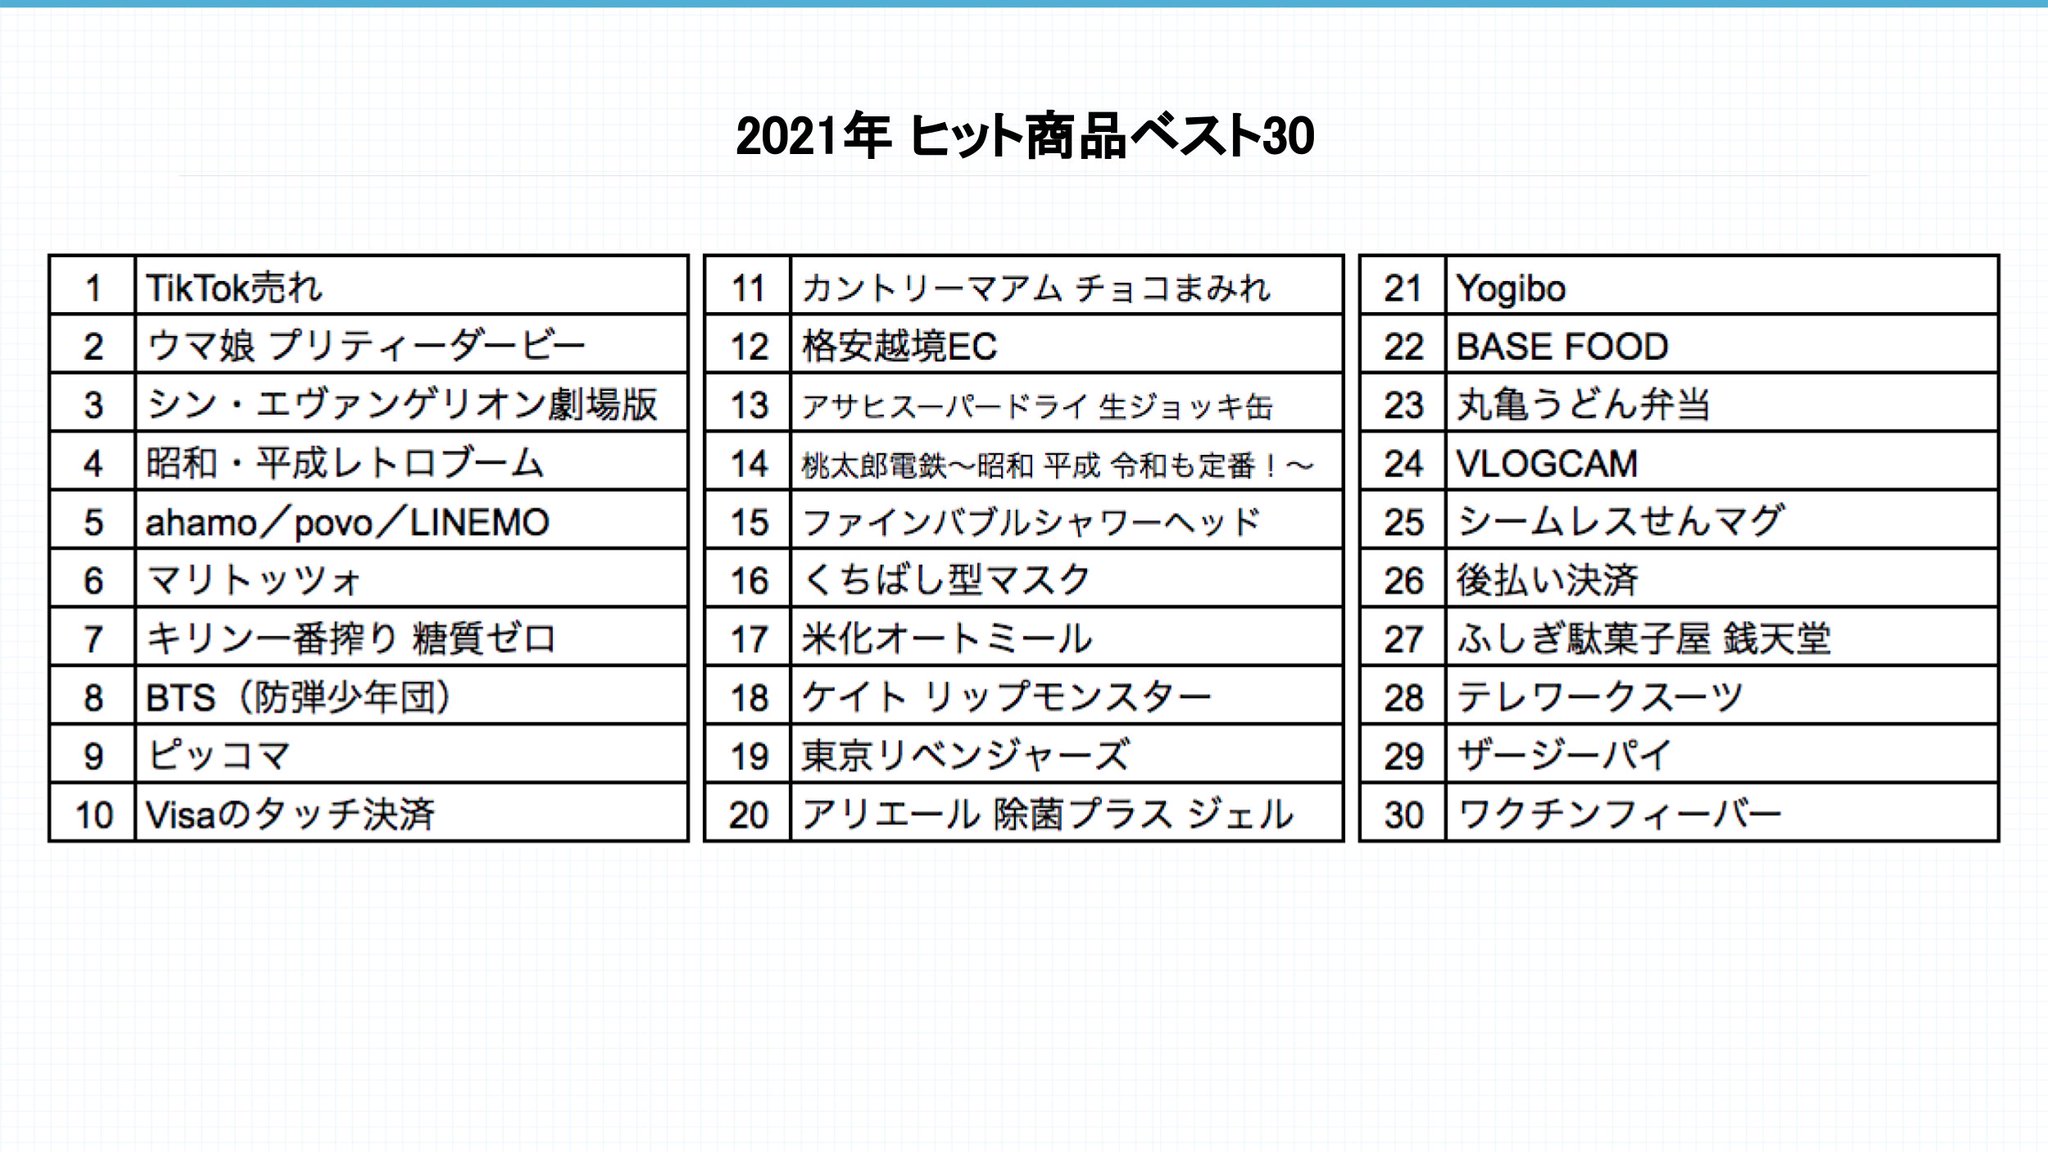 Uma Musume: Pretty Derby y Evangelion entre las 30 marcas más exitosas del año